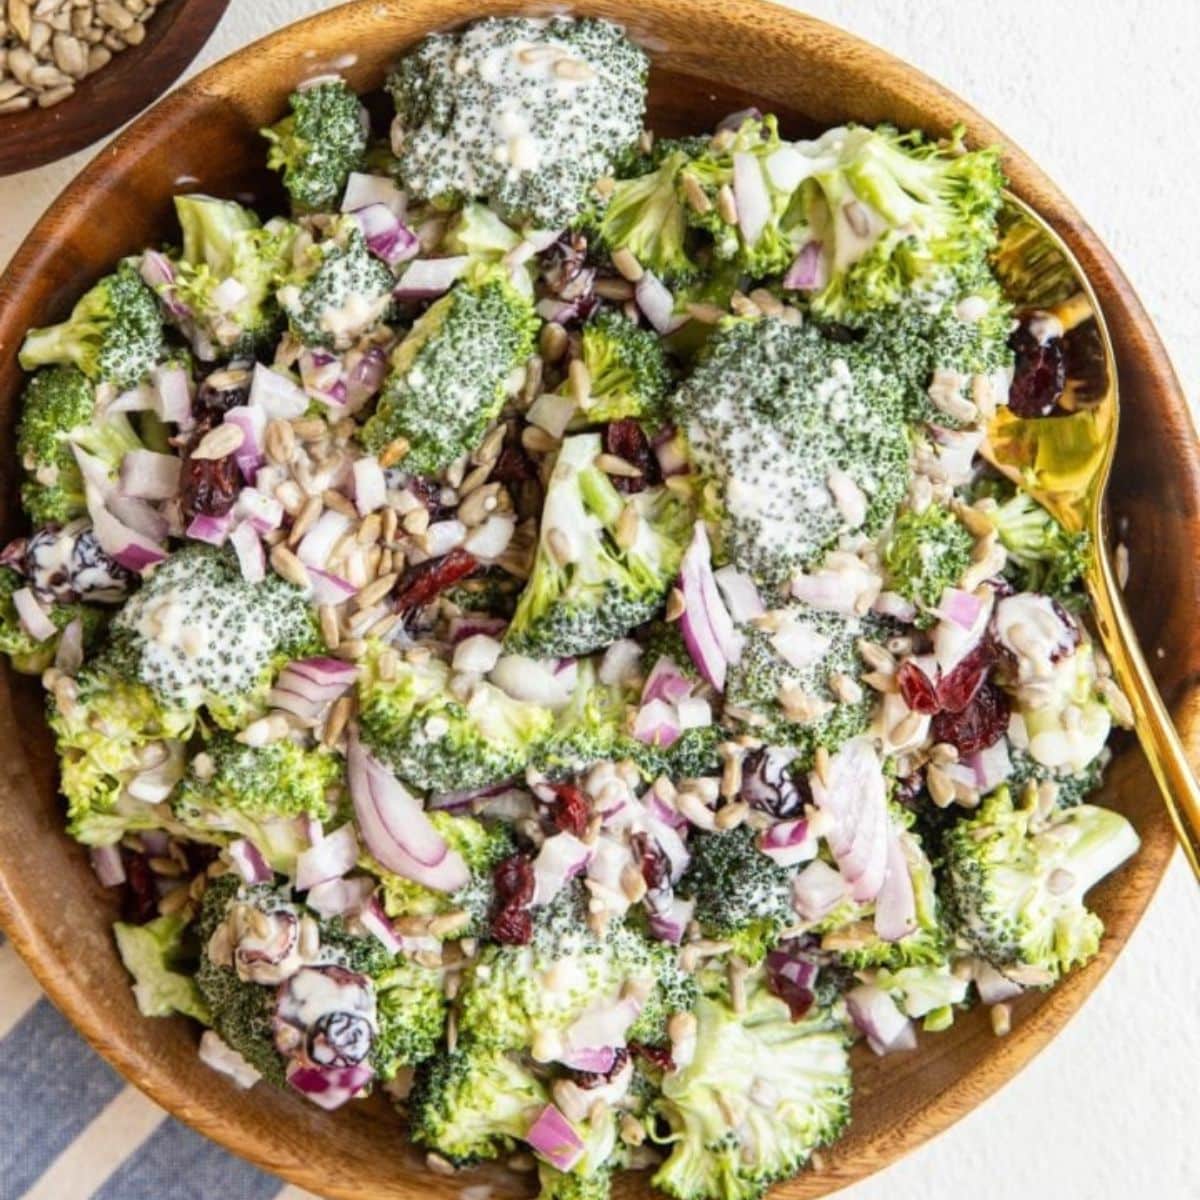 Creamy broccoli salad in a wooden salad bowl.